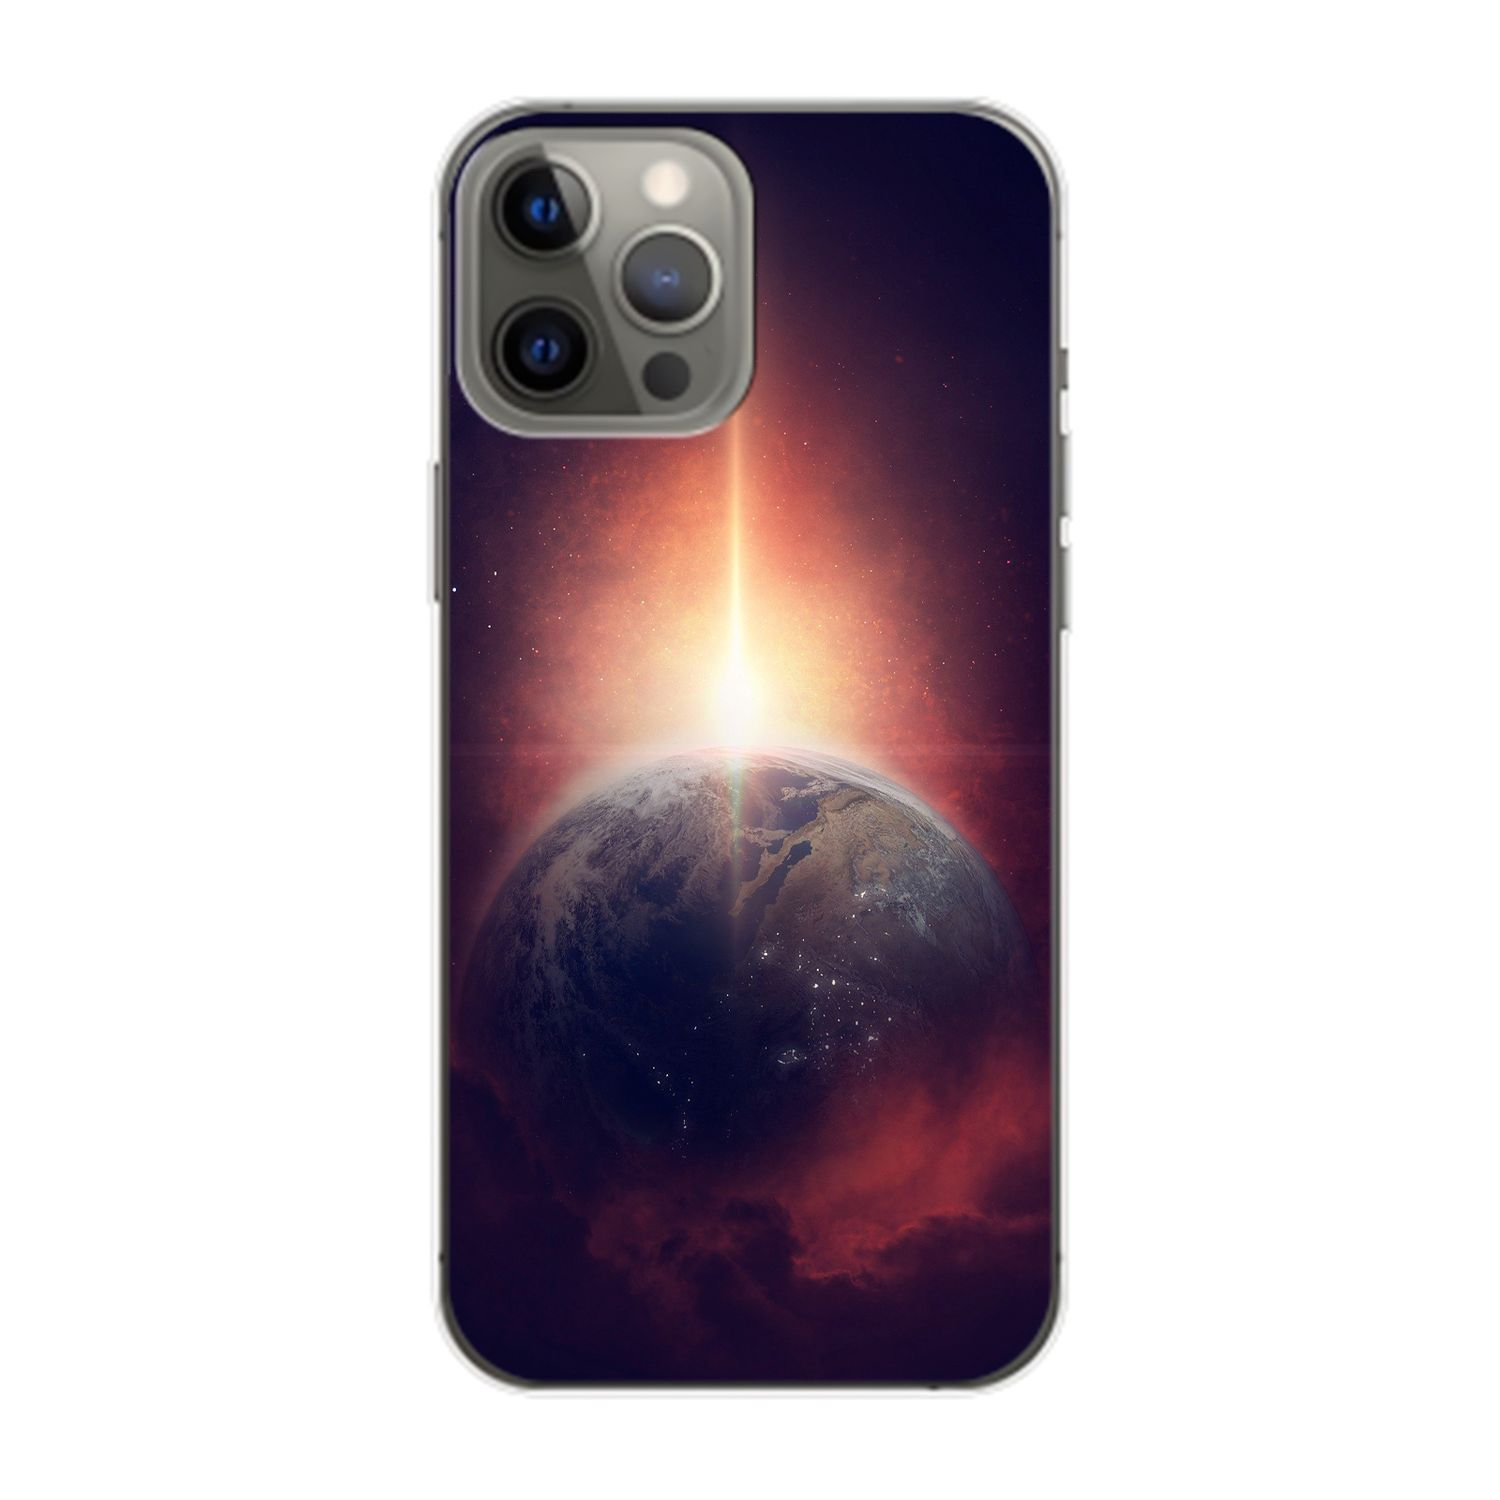 Unsere Erde 14 Pro Apple, Case, Backcover, KÖNIG iPhone Max, DESIGN